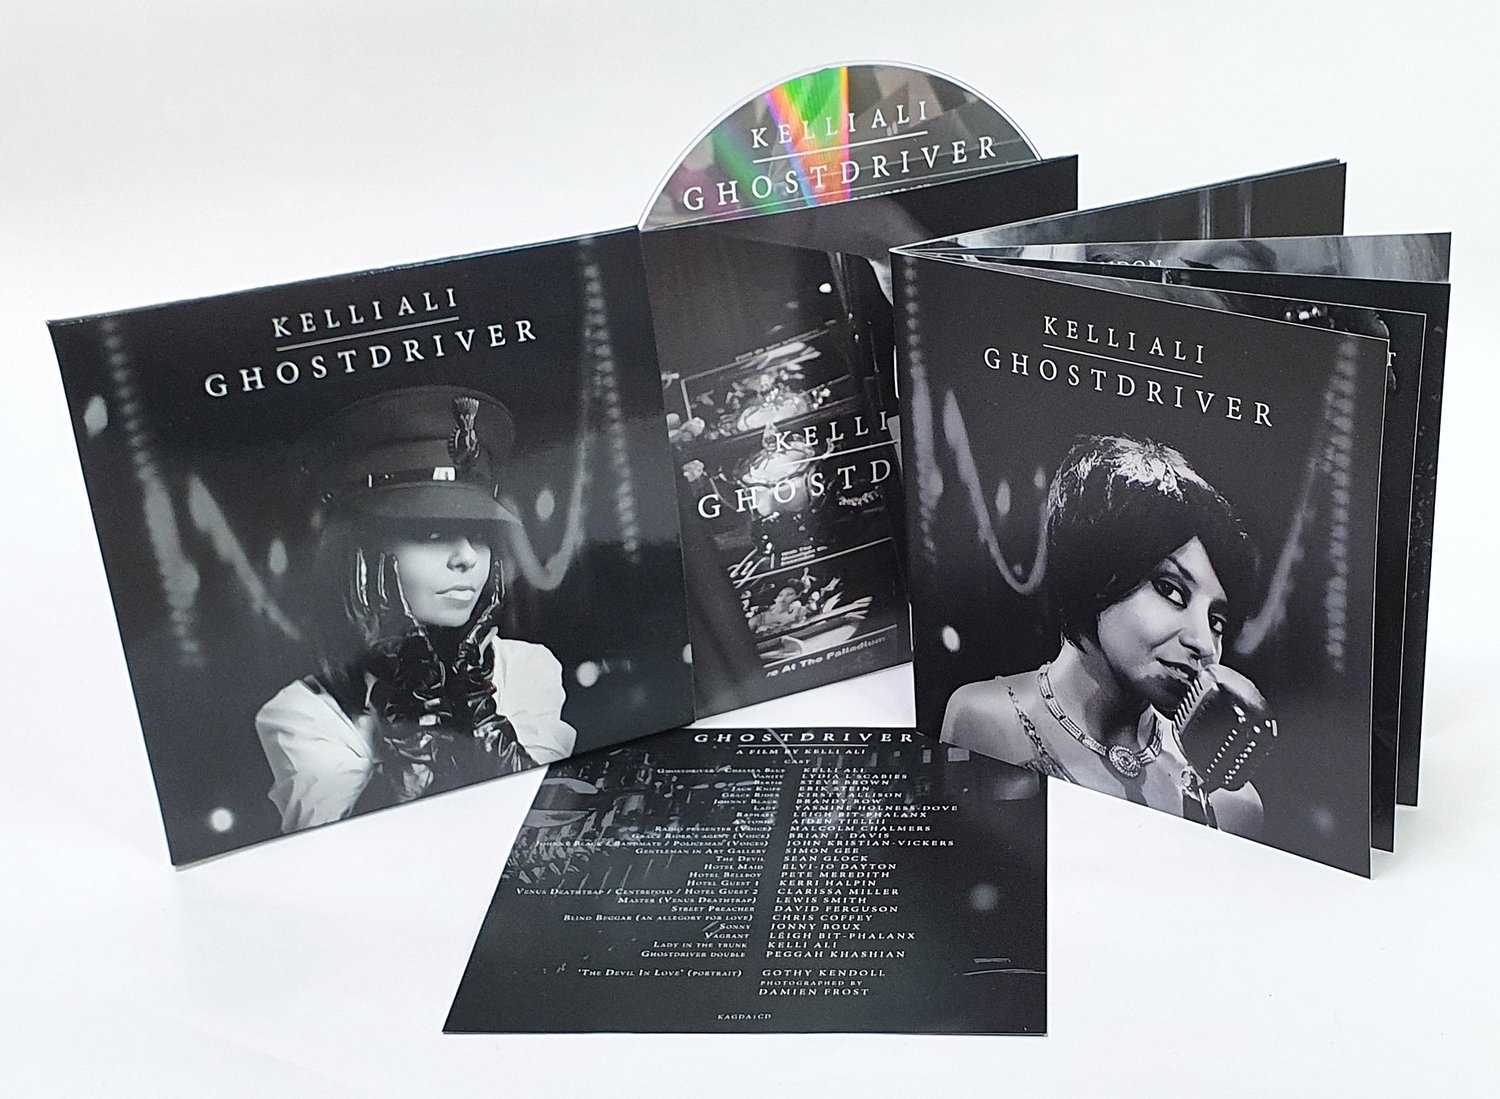 SIGNED GHOSTDRIVER SOUNDTRACK ALBUM CD